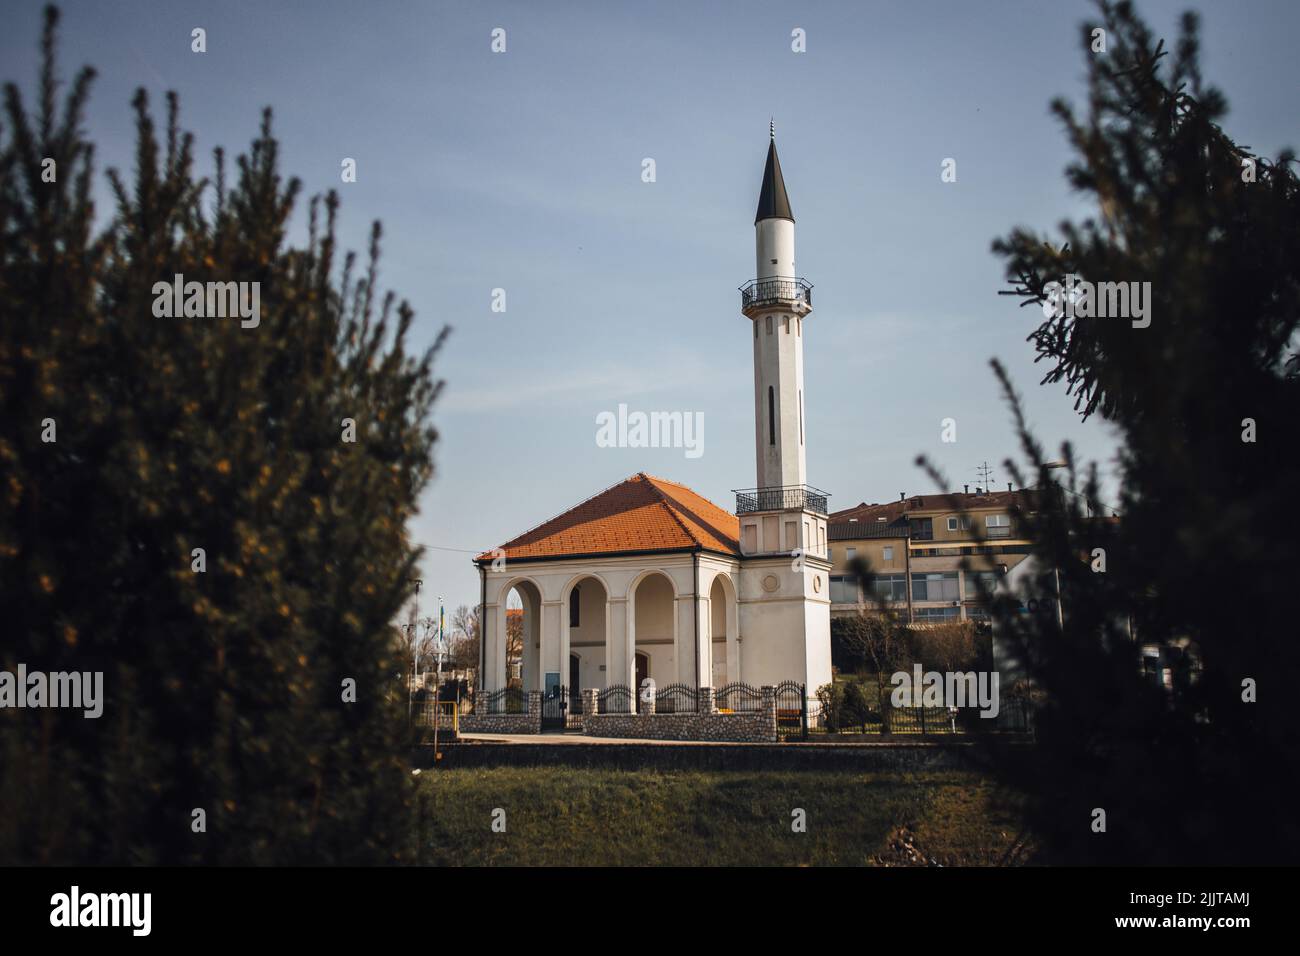 Das äußere Design der Atik Moschee hinter Bäumen auf Kosten des Flusses Sava unter bewölktem Himmel in Brcko, Bosnien und Herzegowina Stockfoto